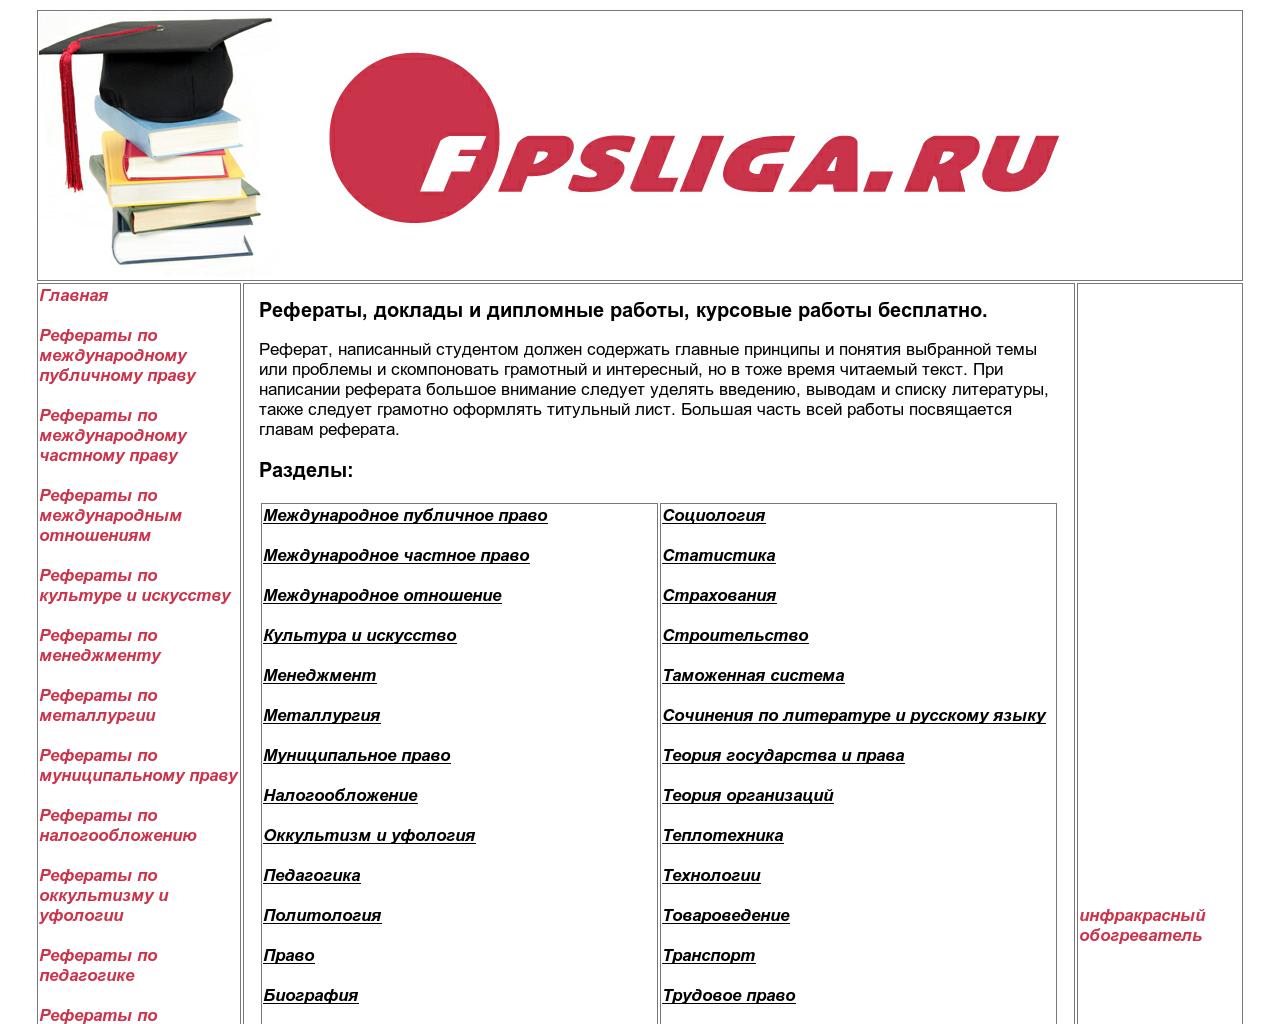 Изображение сайта fpsliga.ru в разрешении 1280x1024